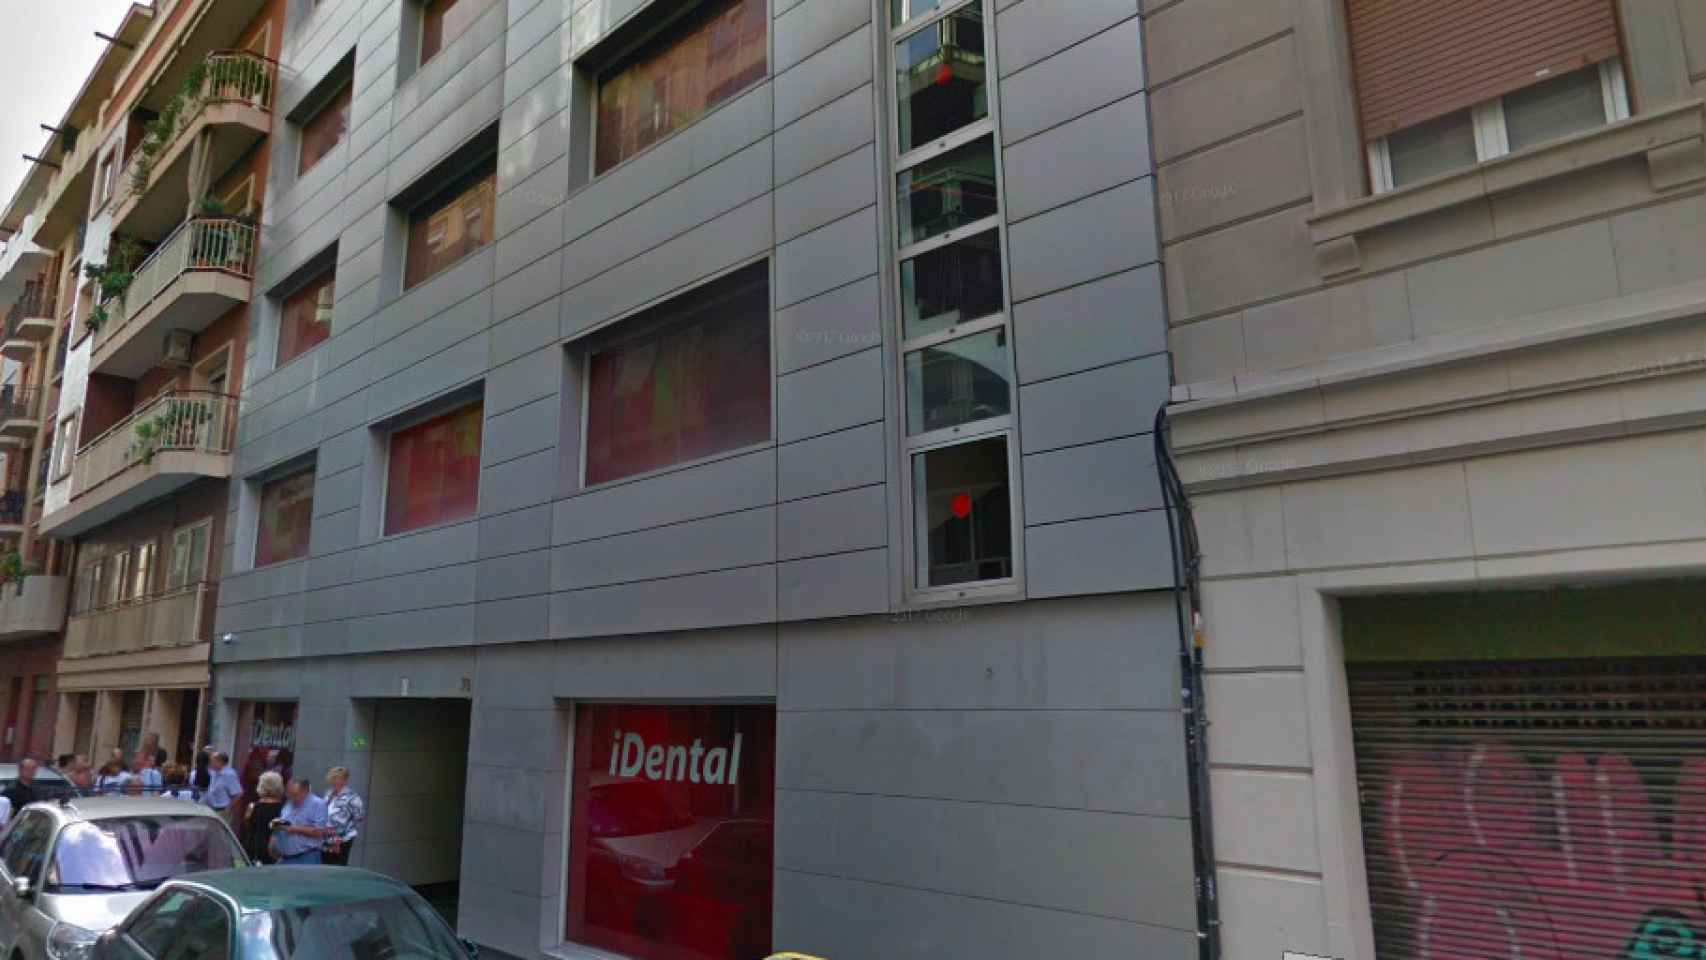 La policía, entrando a registrar una clínica iDental en Barcelona